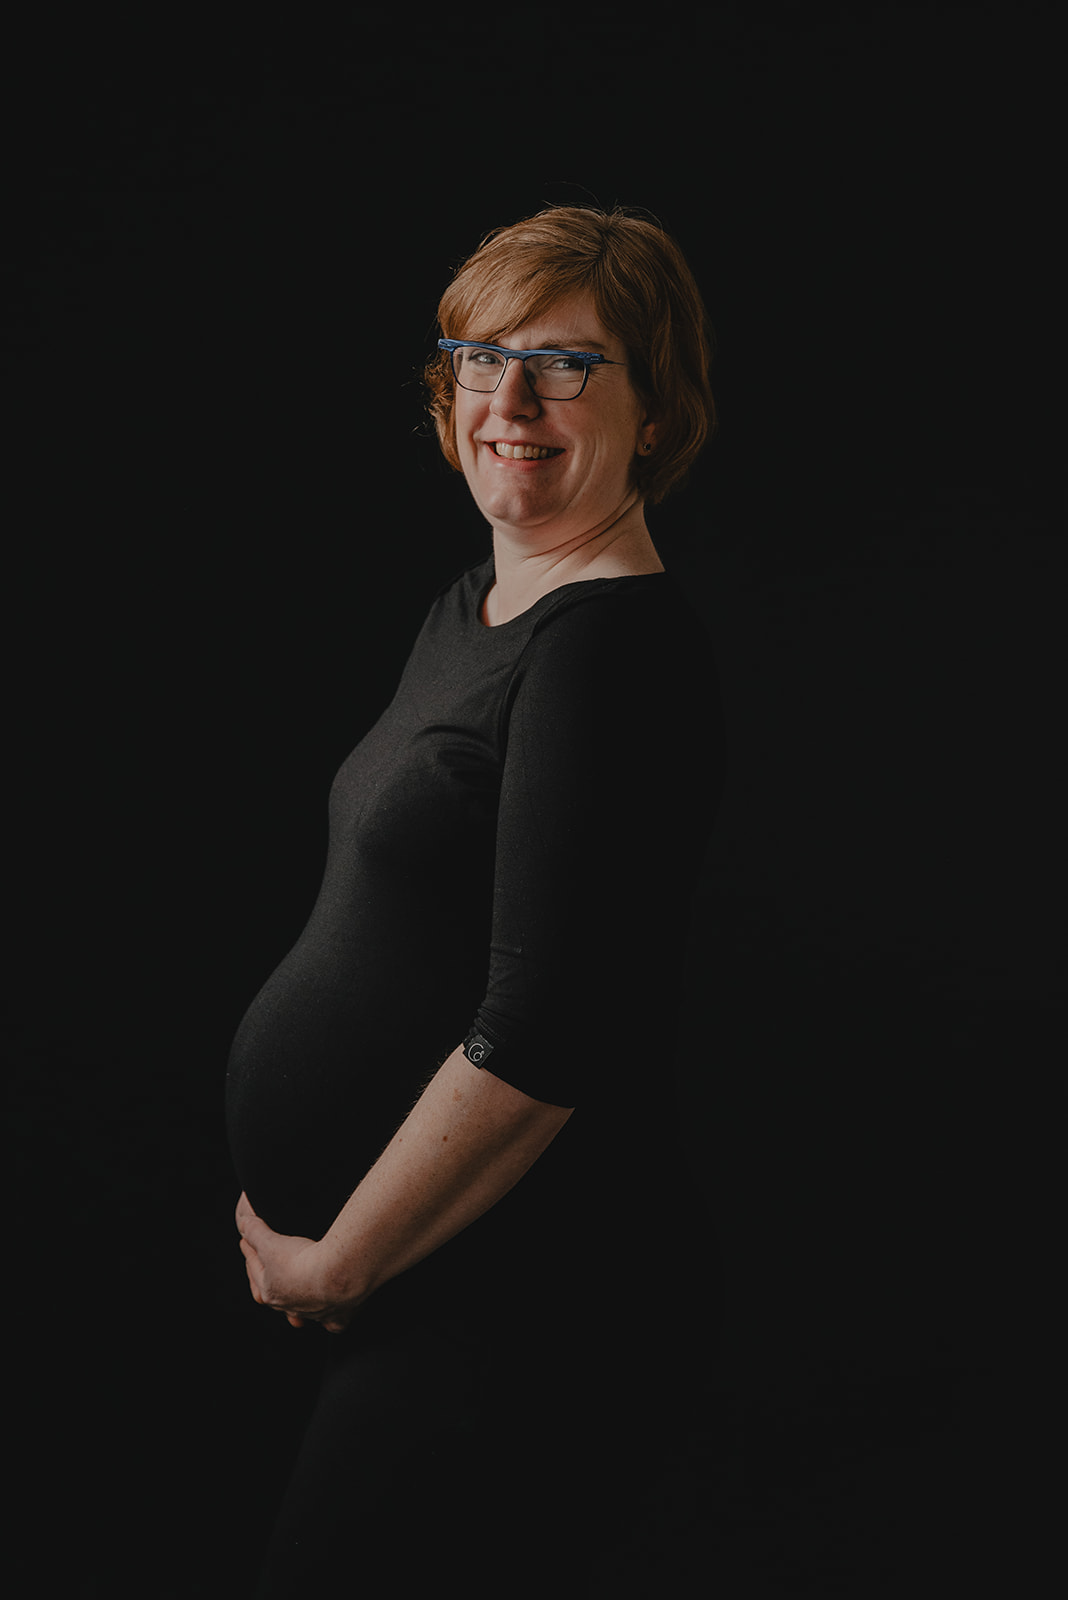 zwangerschapsfotoshoot gelderland overijssel zwolle deventer raalte studio vaassen elburg doornspijk zwanger fotoshoot